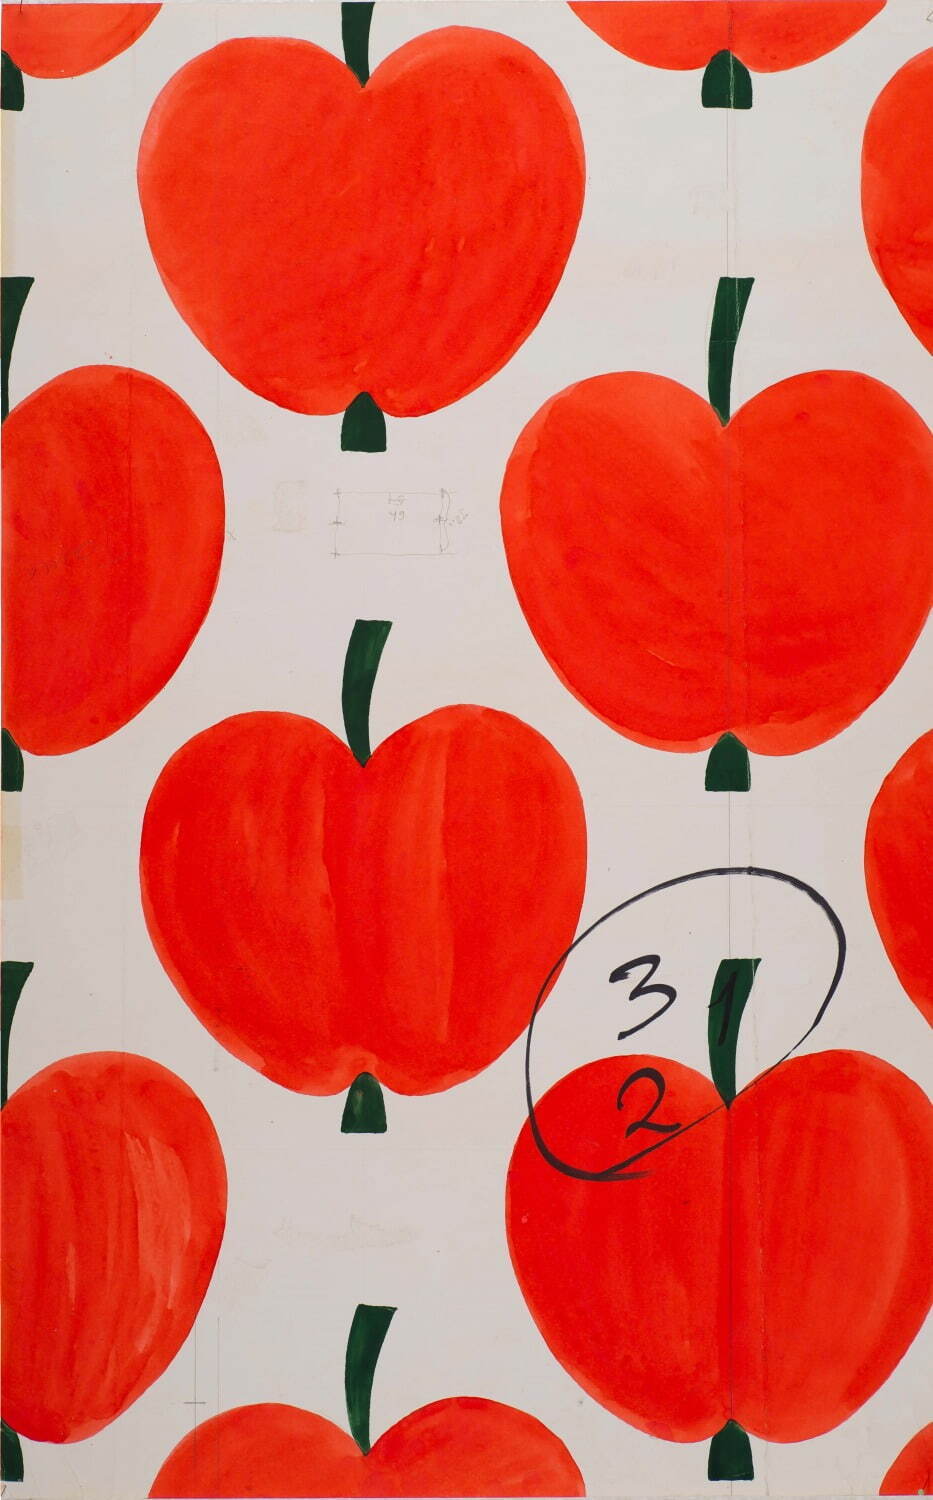 アイニ・ヴァーリ作「オンップ(リンゴ)」 原画 1972年
フォルッサ博物館所蔵